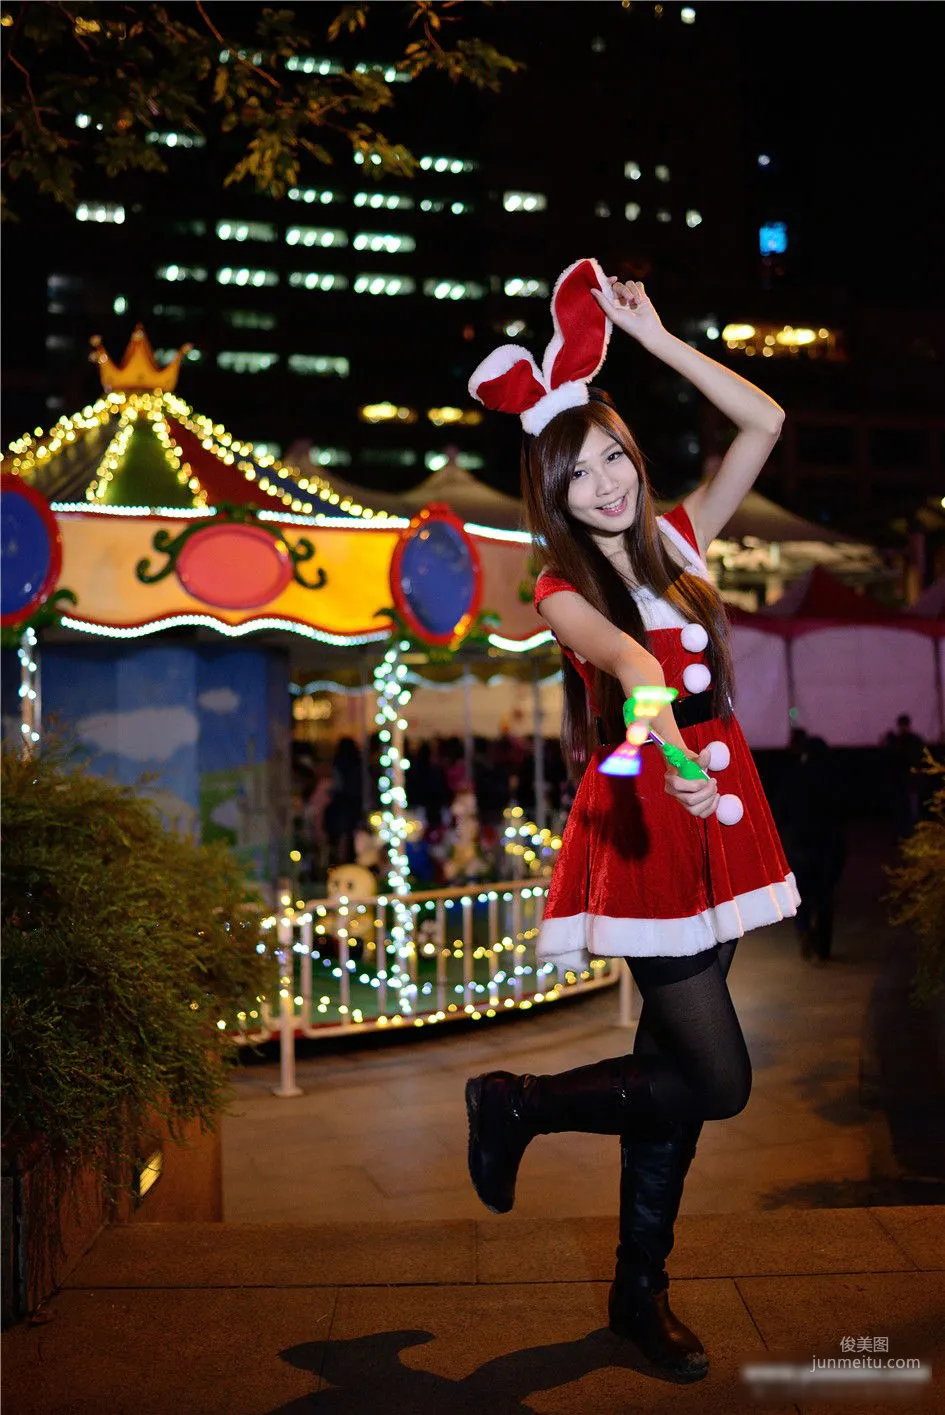 [台湾女神] 张雅筑chu 《板橋車站圣诞节外拍》 写真集10